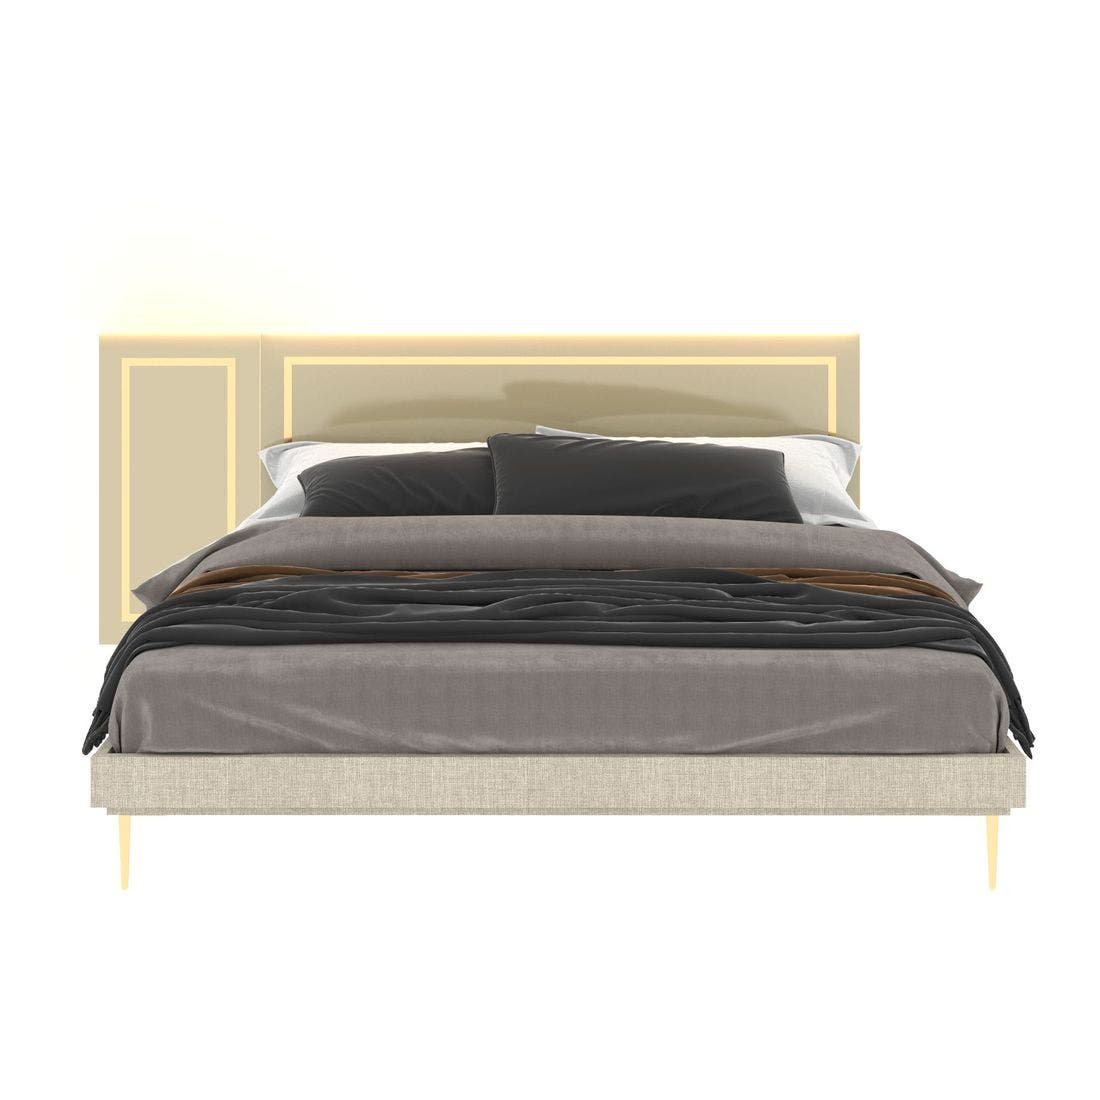 59023214-the-master-furniture-bedroom-furniture-beds-01